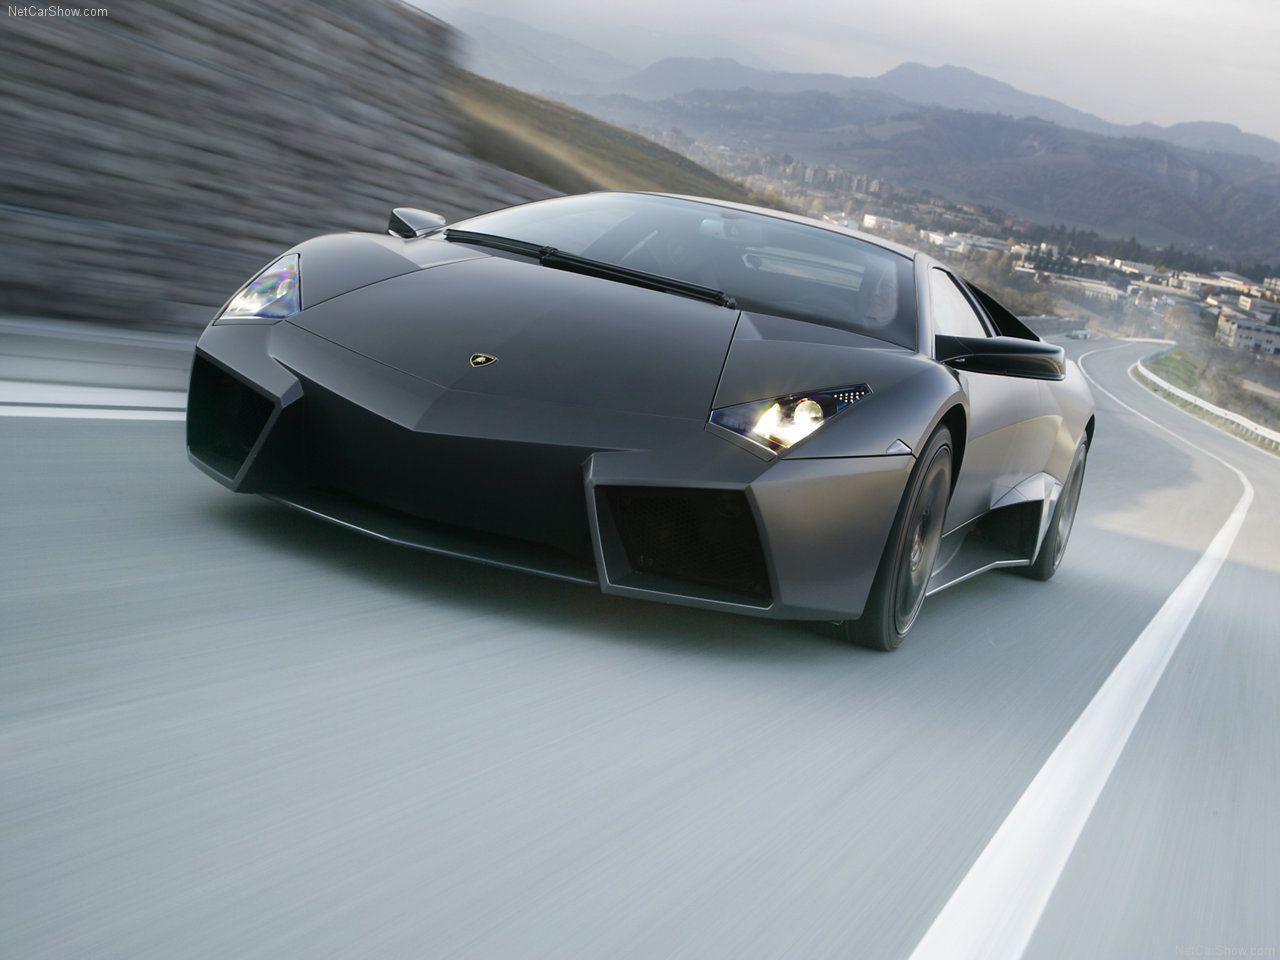 Lamborghini Cars Wallpaper HD. Lamborghini FB Covers. High